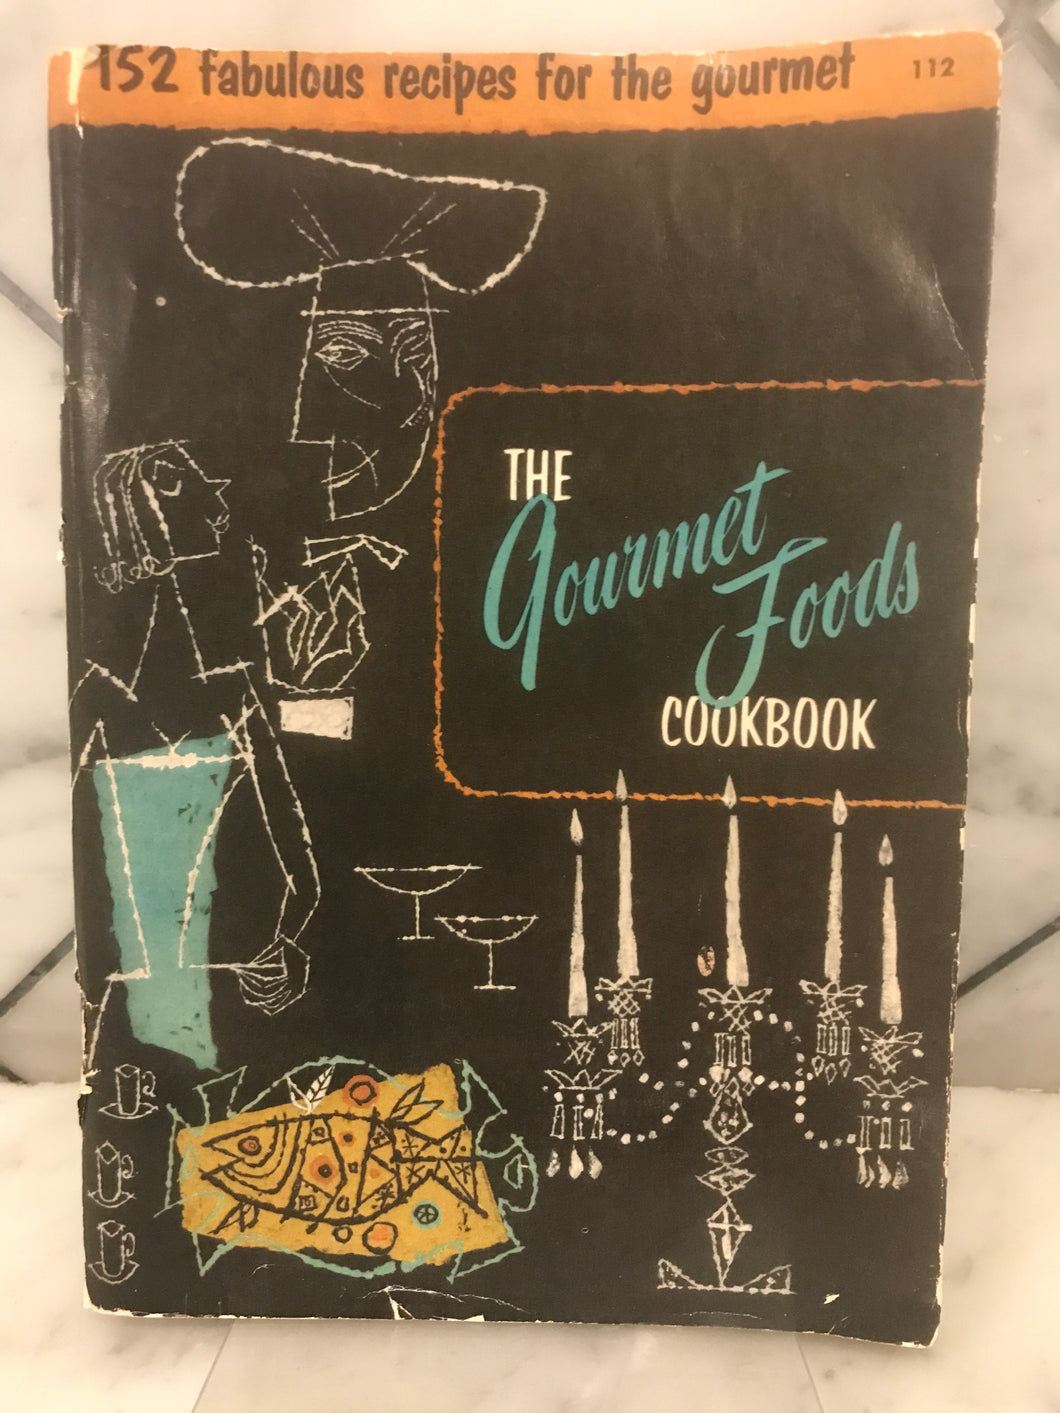 The Gourmet Foods Cookbook